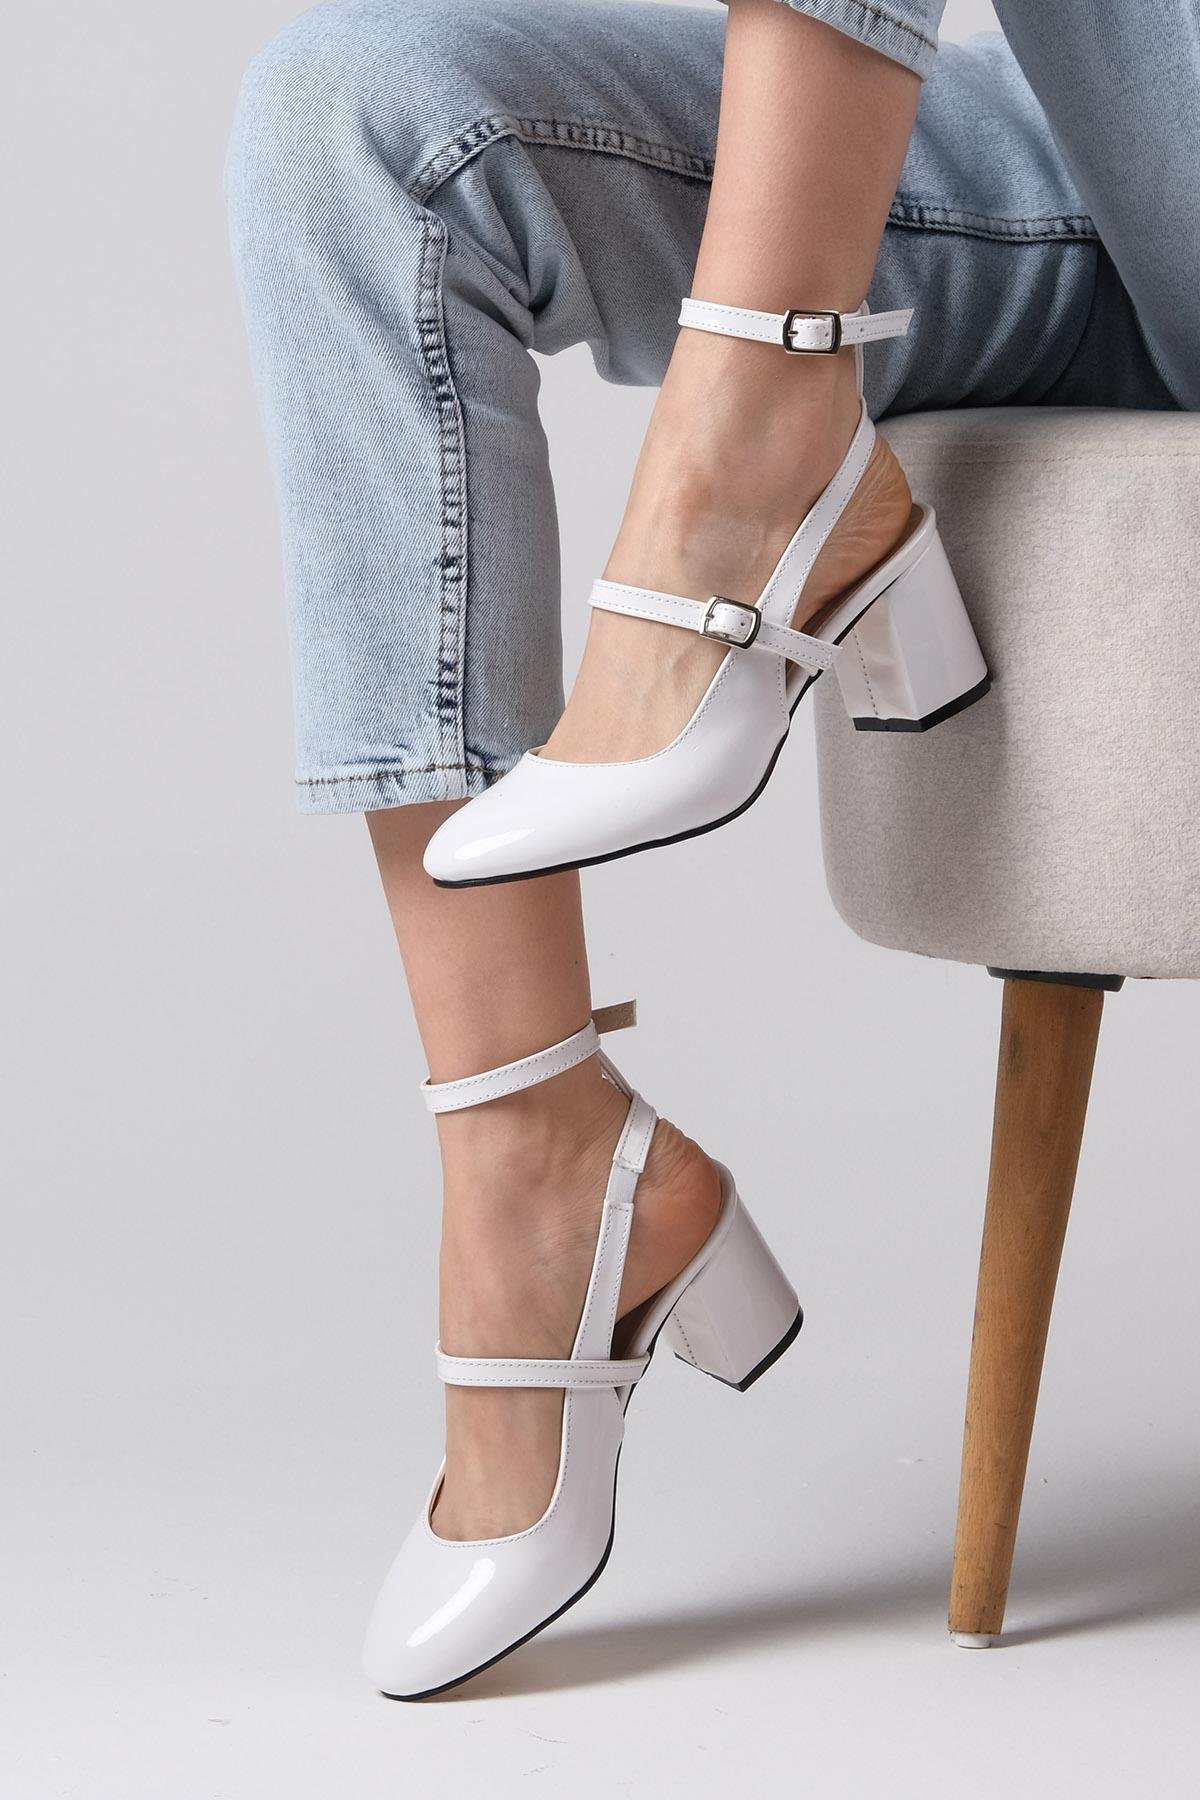 Mio Gusto Beyaz Renk Rugan Topuklu Ayakkabı